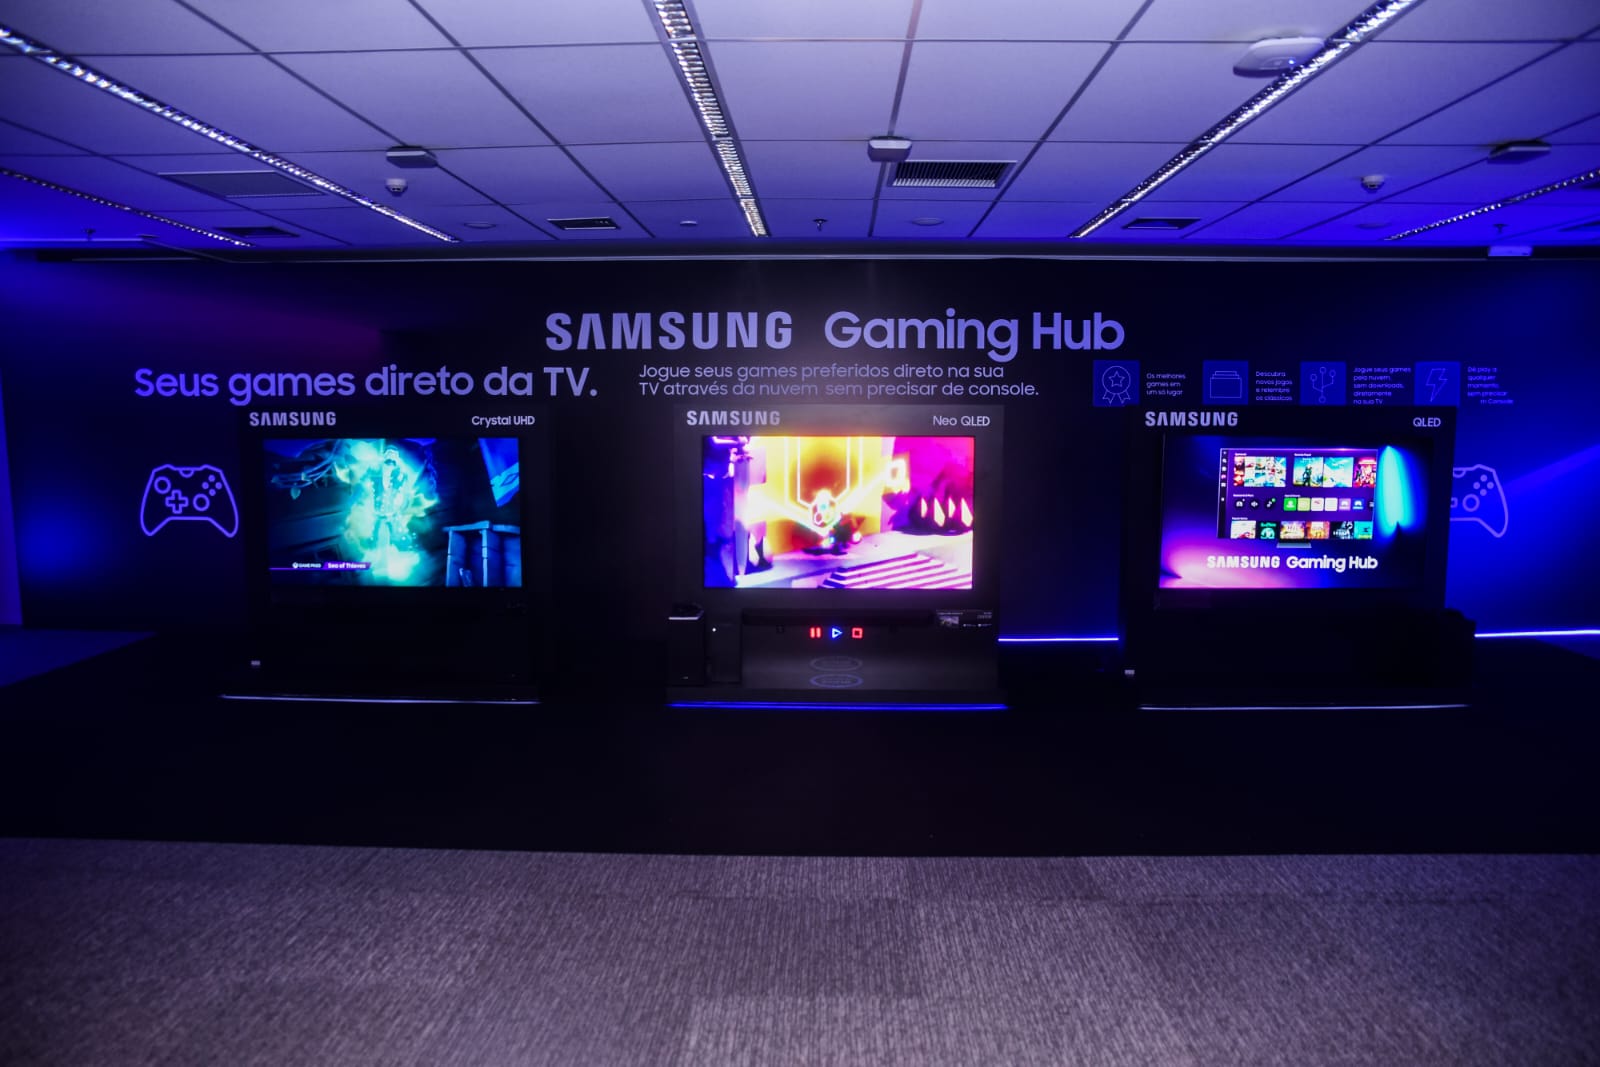 Samsung Gaming Hub: como jogar na TV Samsung, preço e jogos